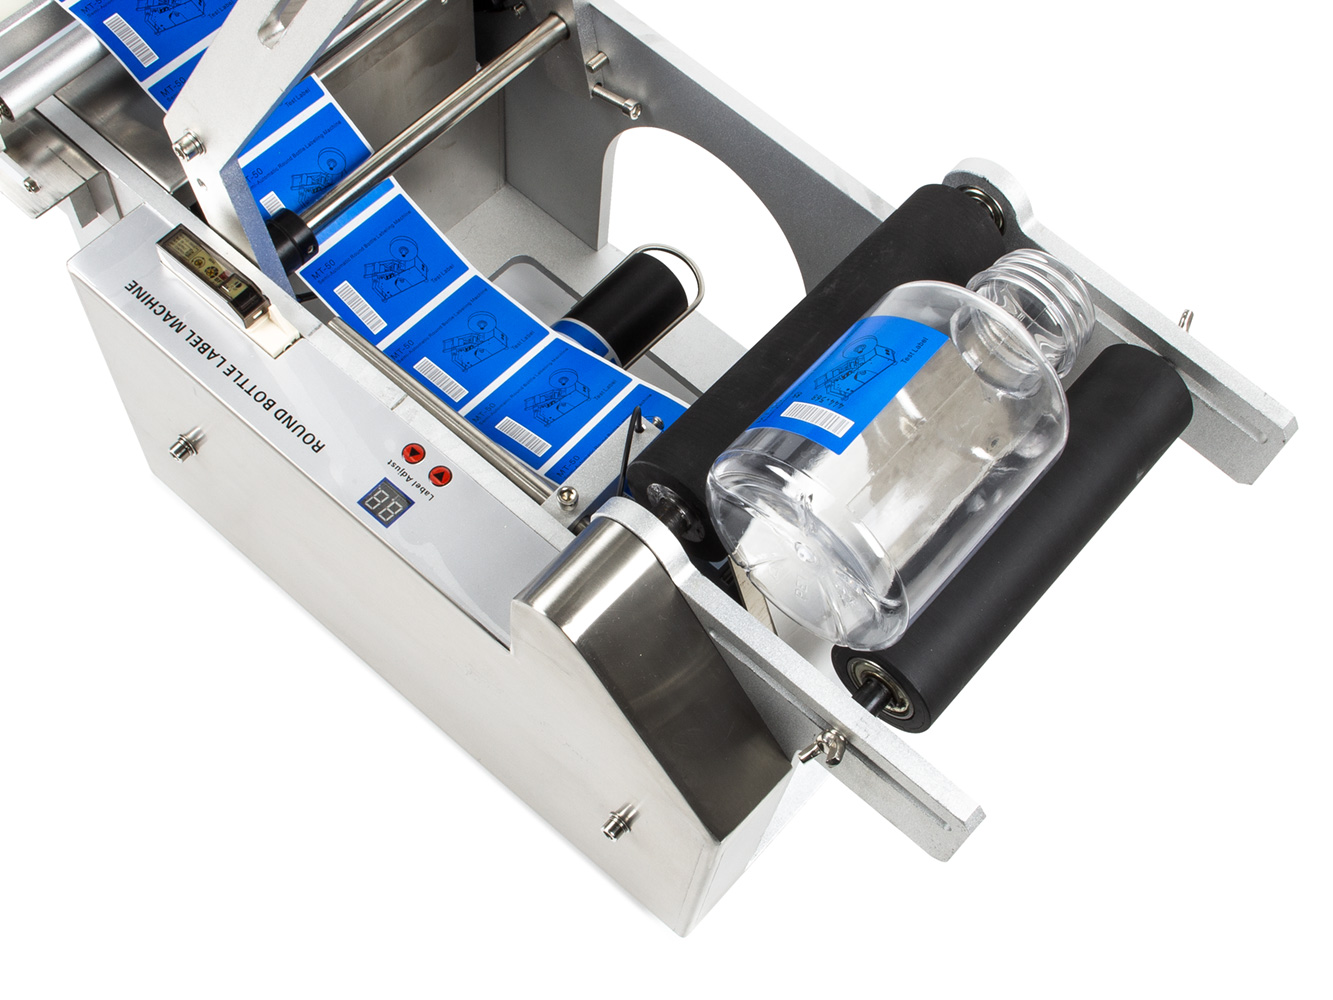 Poloautomatická etiketovačka LT-50D na lahve, dózy a plechovky s integrovanou tiskárnou expirací